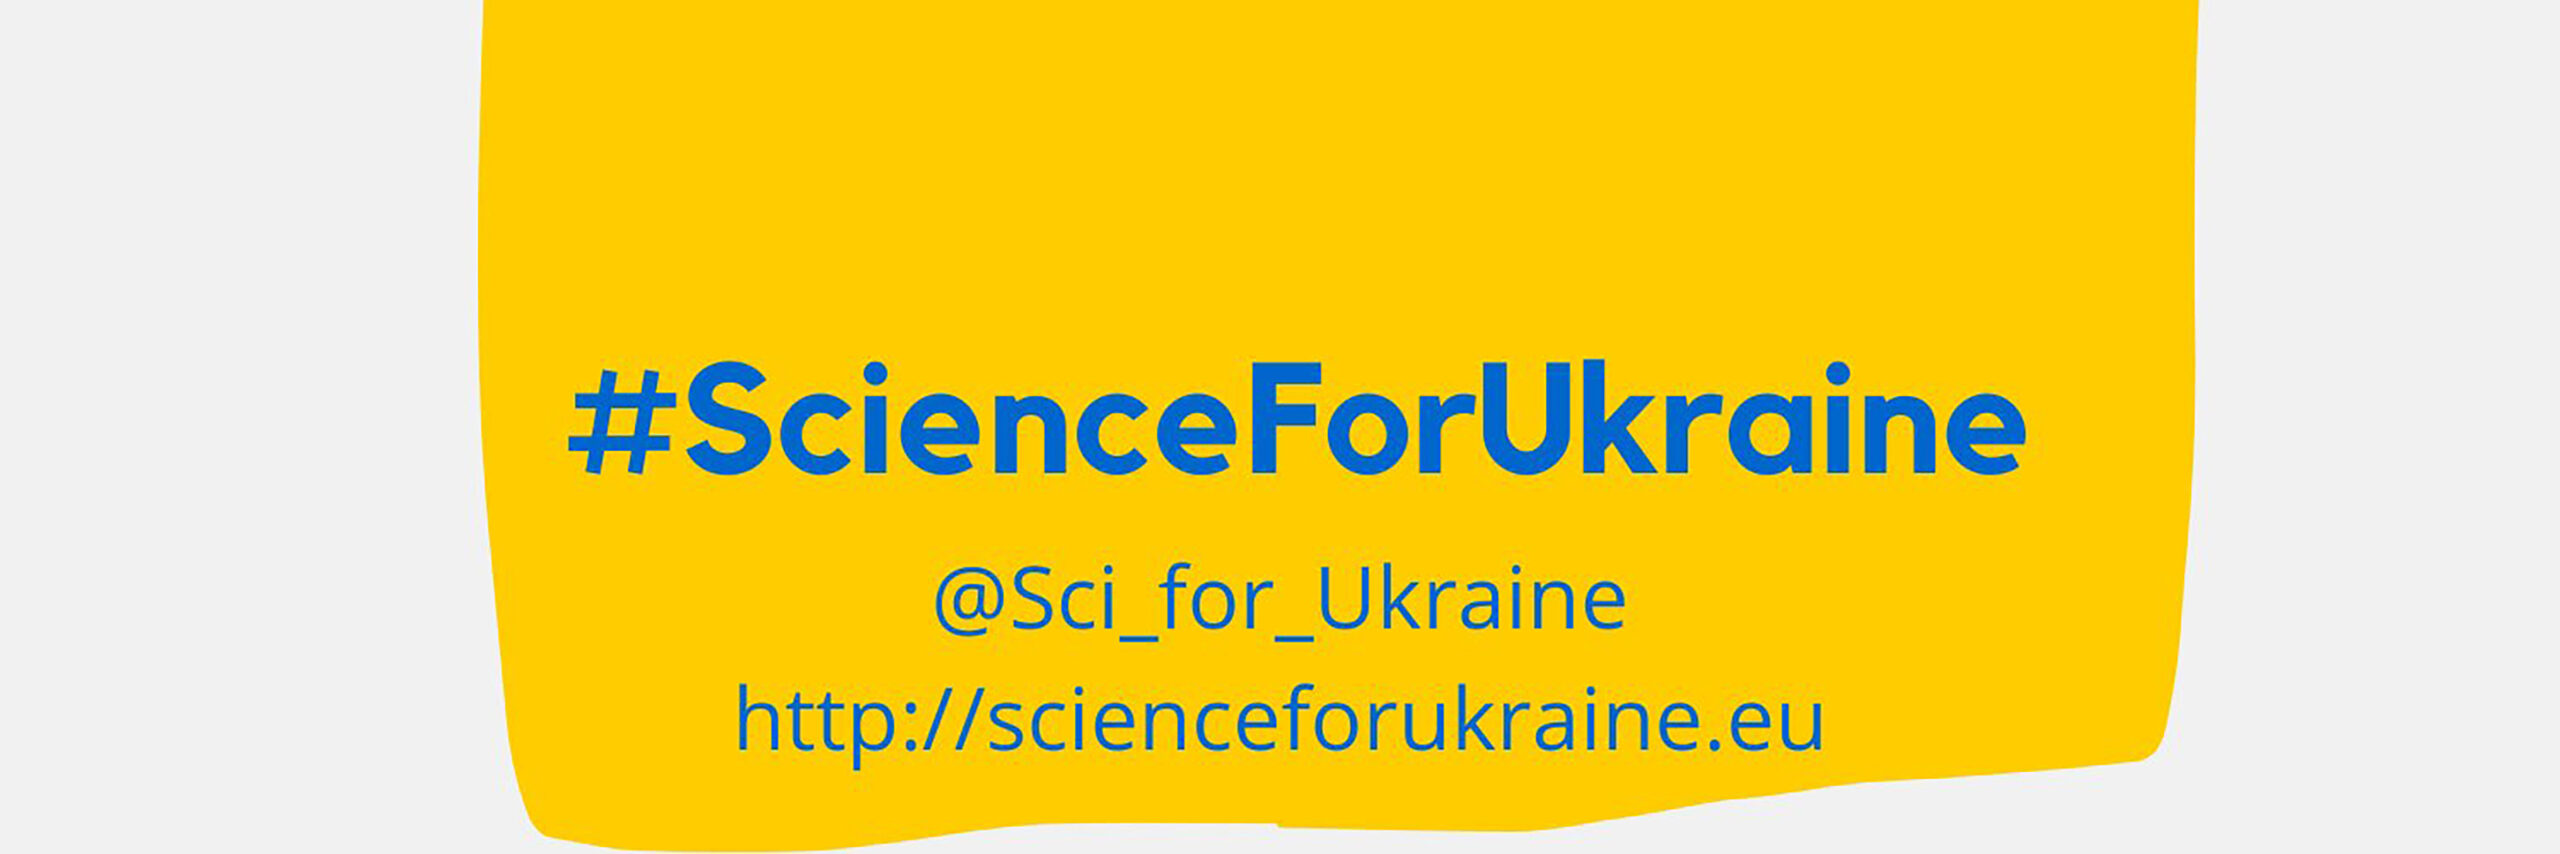 Science for Ukraine banner